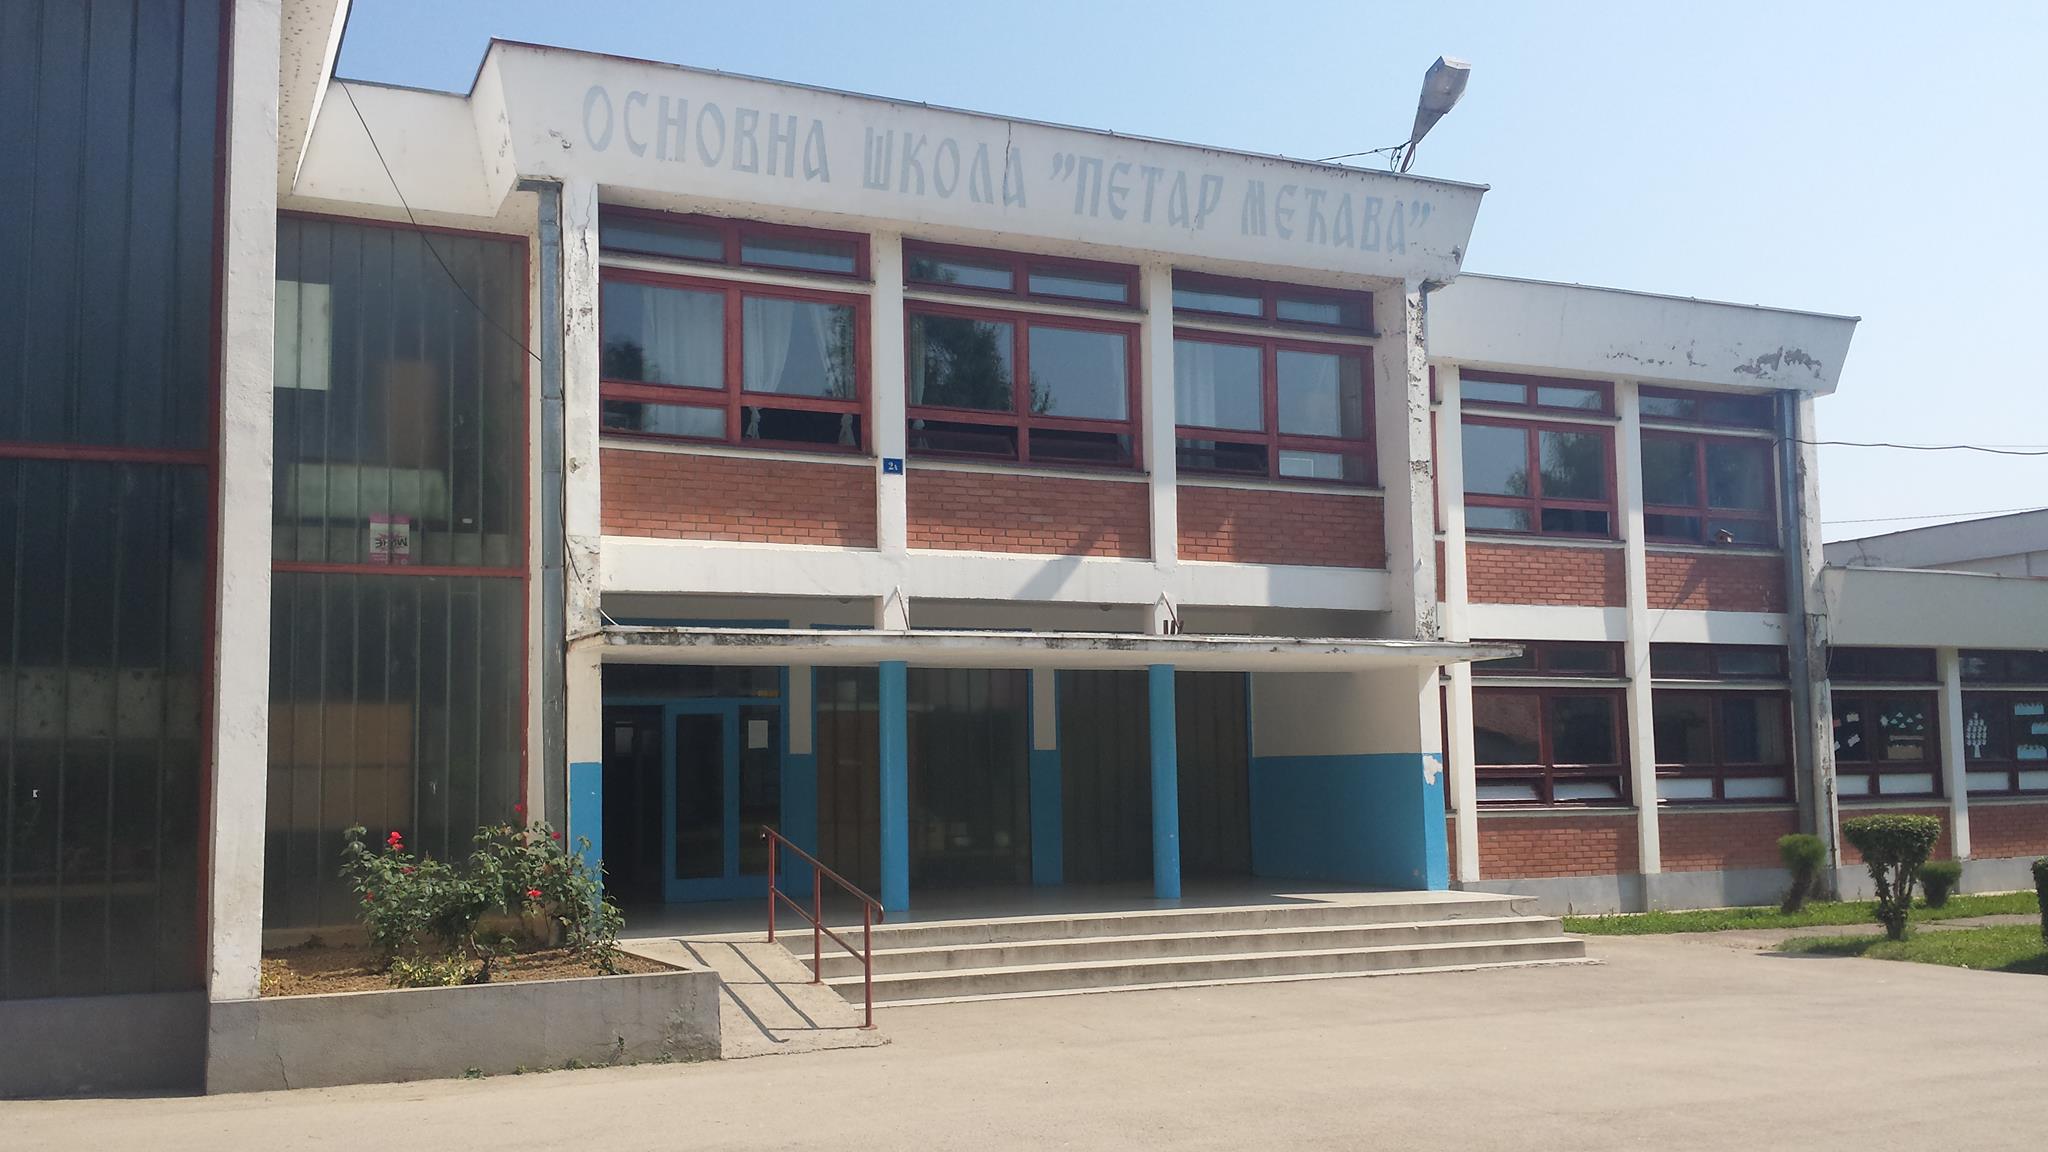 Osnovna škola Petar Mećava